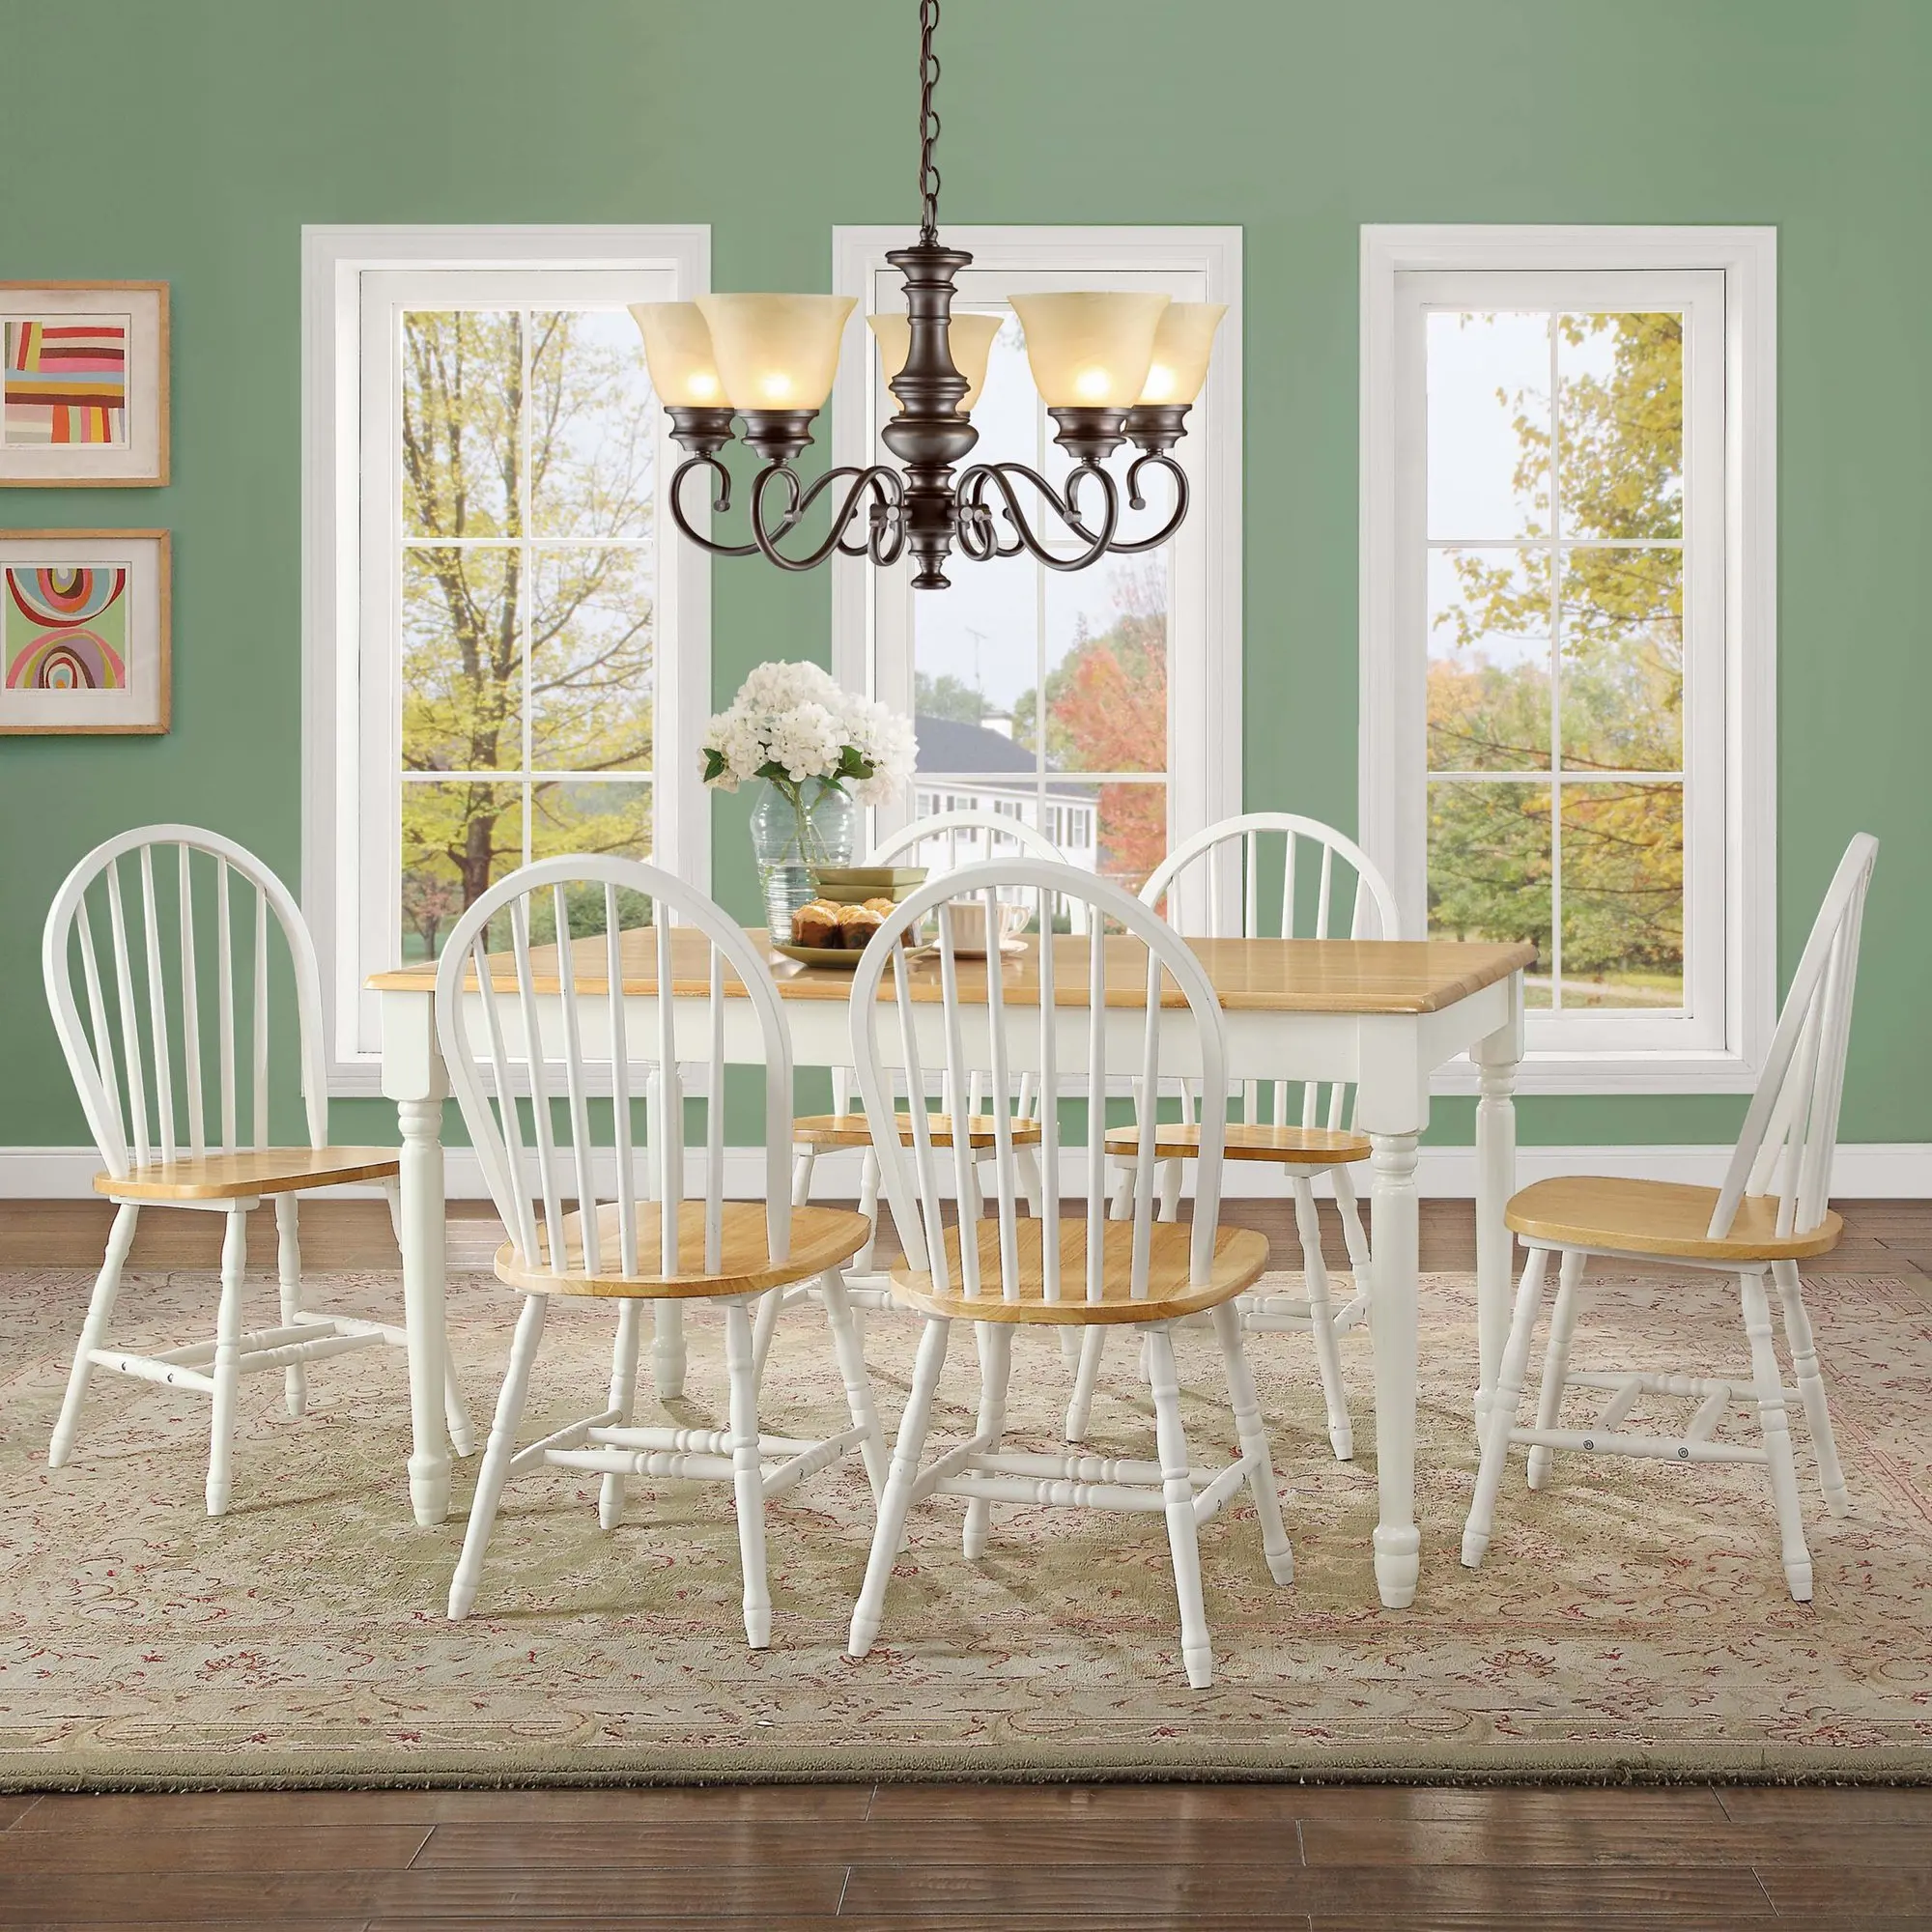 Осенние обеденные стулья из массива дерева, белого и дубового (комплект из 2 предметов), в наличии 4 варианта отделки. . ' - ' . 4